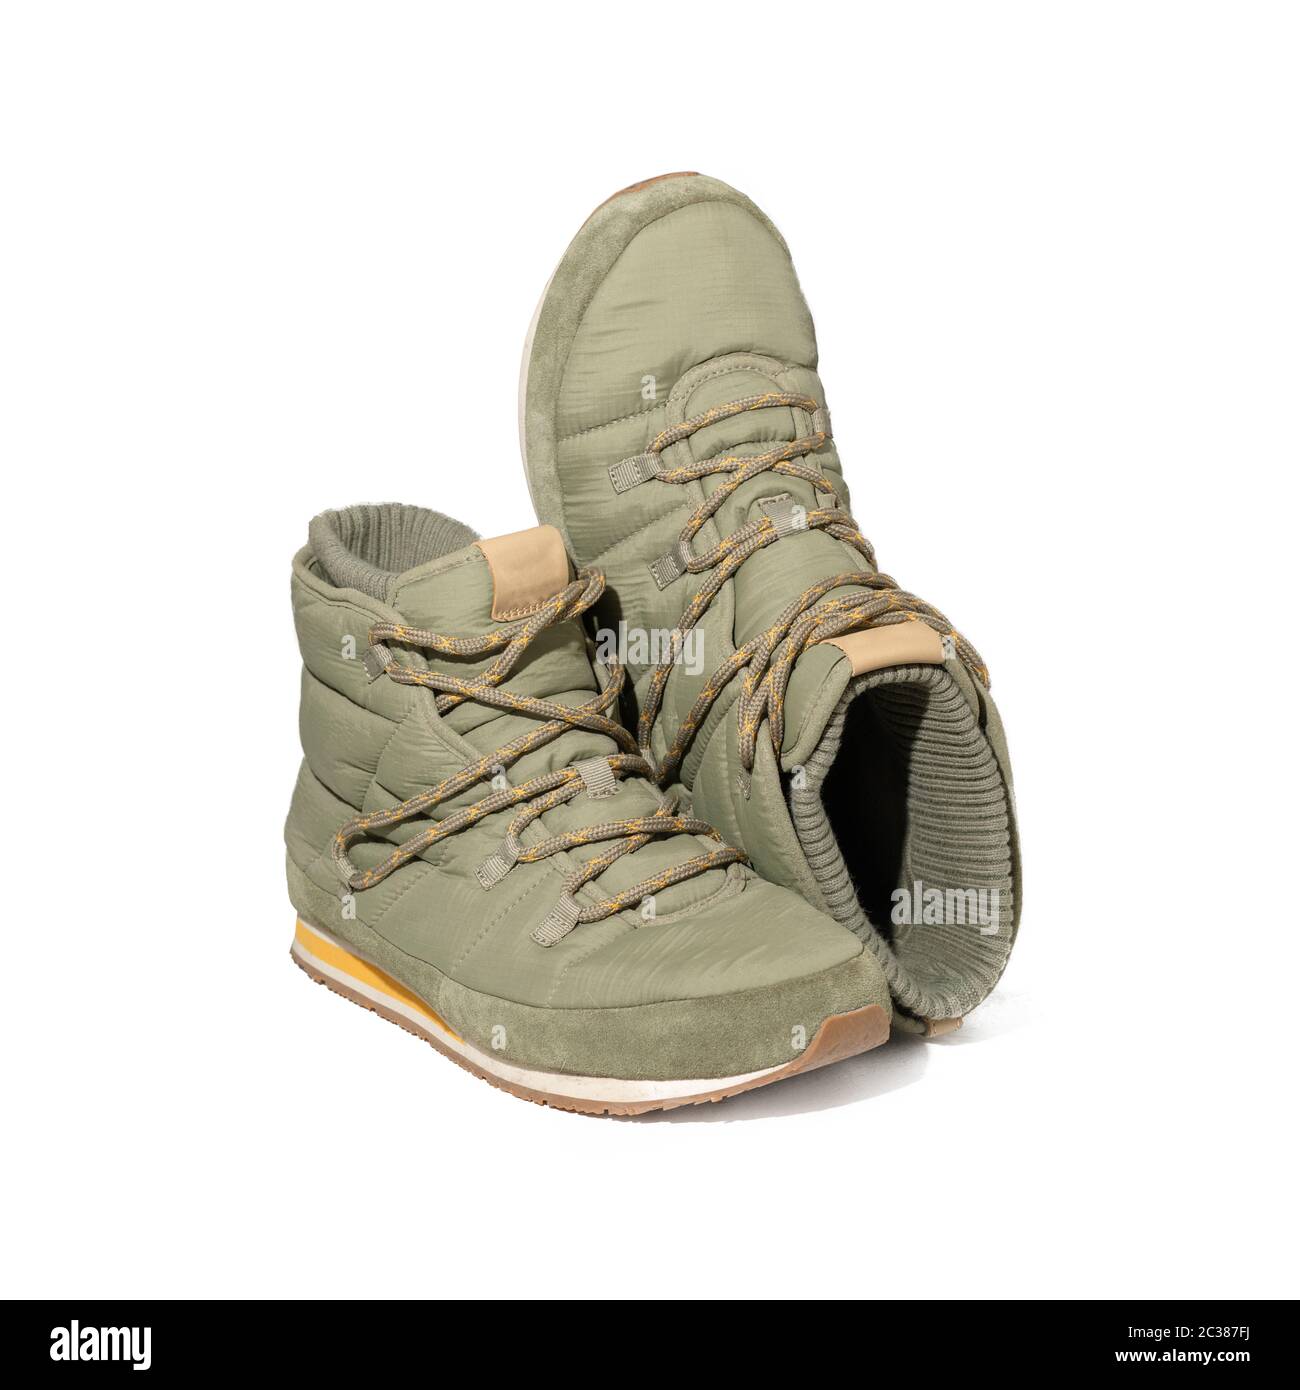 Bottes de randonnée ou de randonnée. Chaussures vert clair avec laçage pour la saison froide. Découpe sur fond blanc Banque D'Images